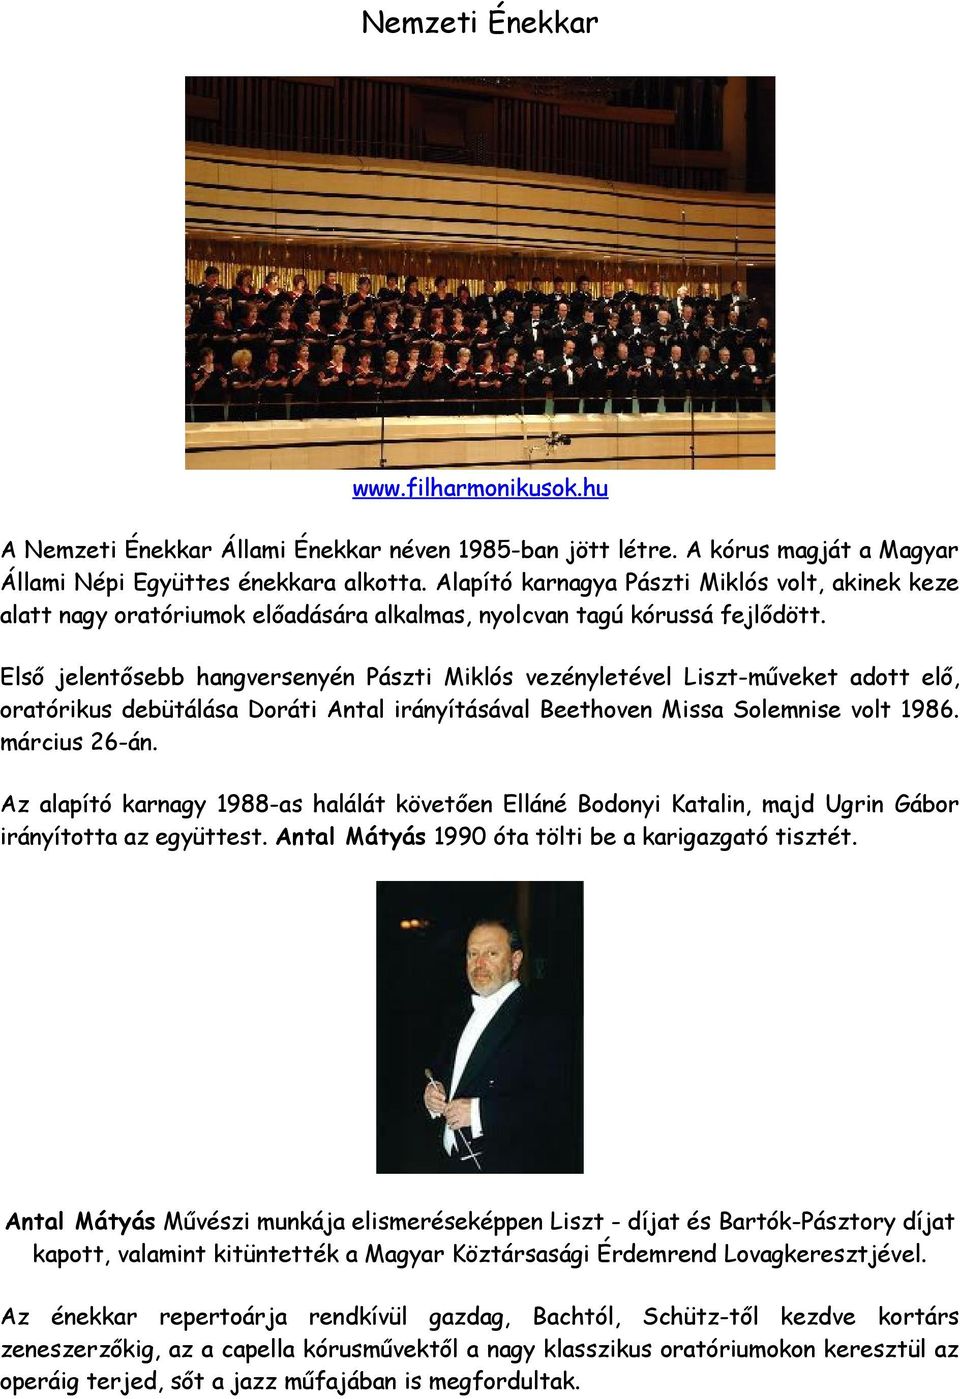 Első jelentősebb hangversenyén Pászti Miklós vezényletével Liszt-műveket adott elő, oratórikus debütálása Doráti Antal irányításával Beethoven Missa Solemnise volt 1986. március 26-án.